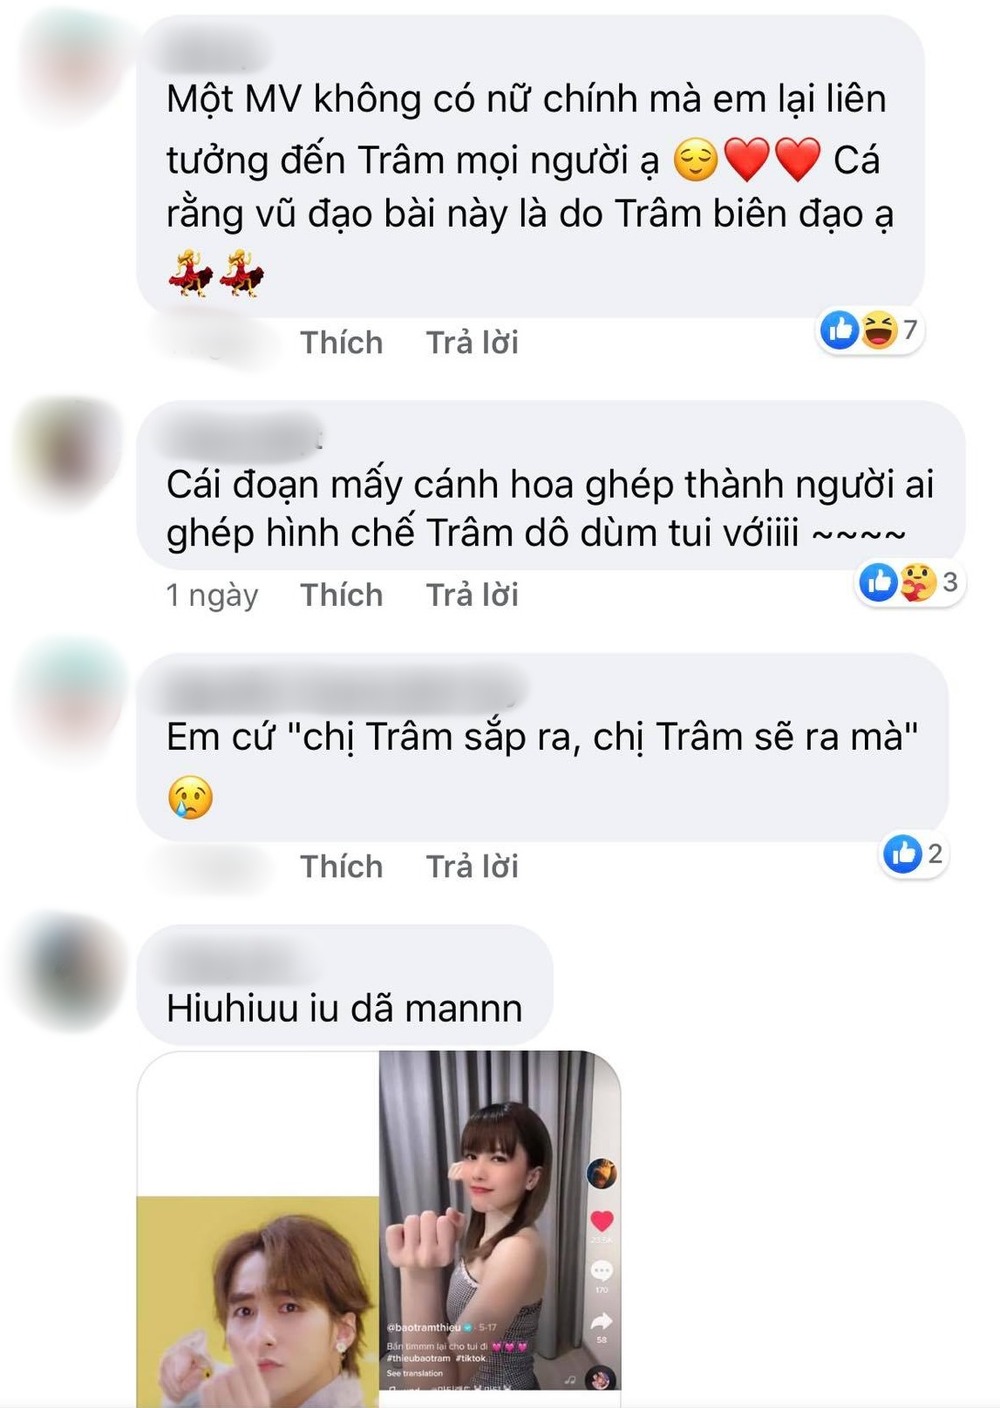  
Fan liên tục nhắc tên Thiều Bảo Trâm khi bàn luận về MV mới của Sơn Tùng M-TP (Ảnh chụp màn hình)